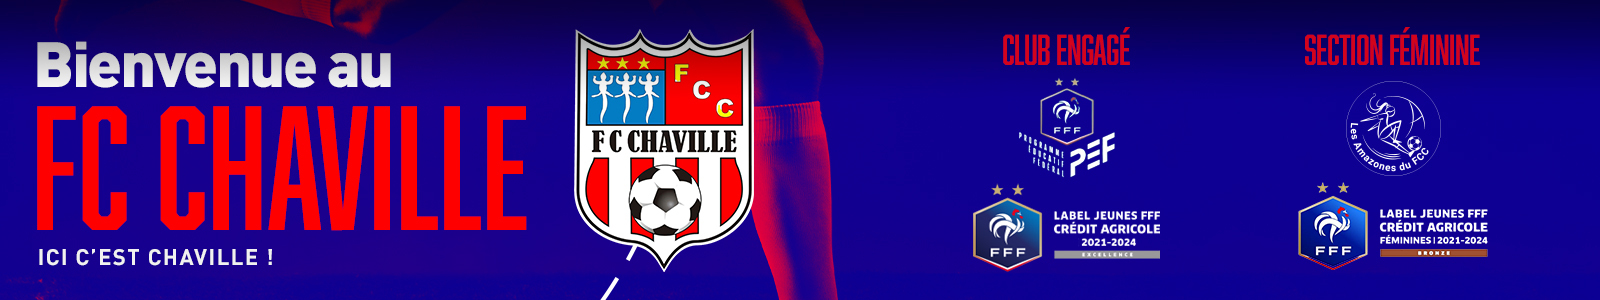 FC CHAVILLE : site officiel du club de foot de Chaville - footeo